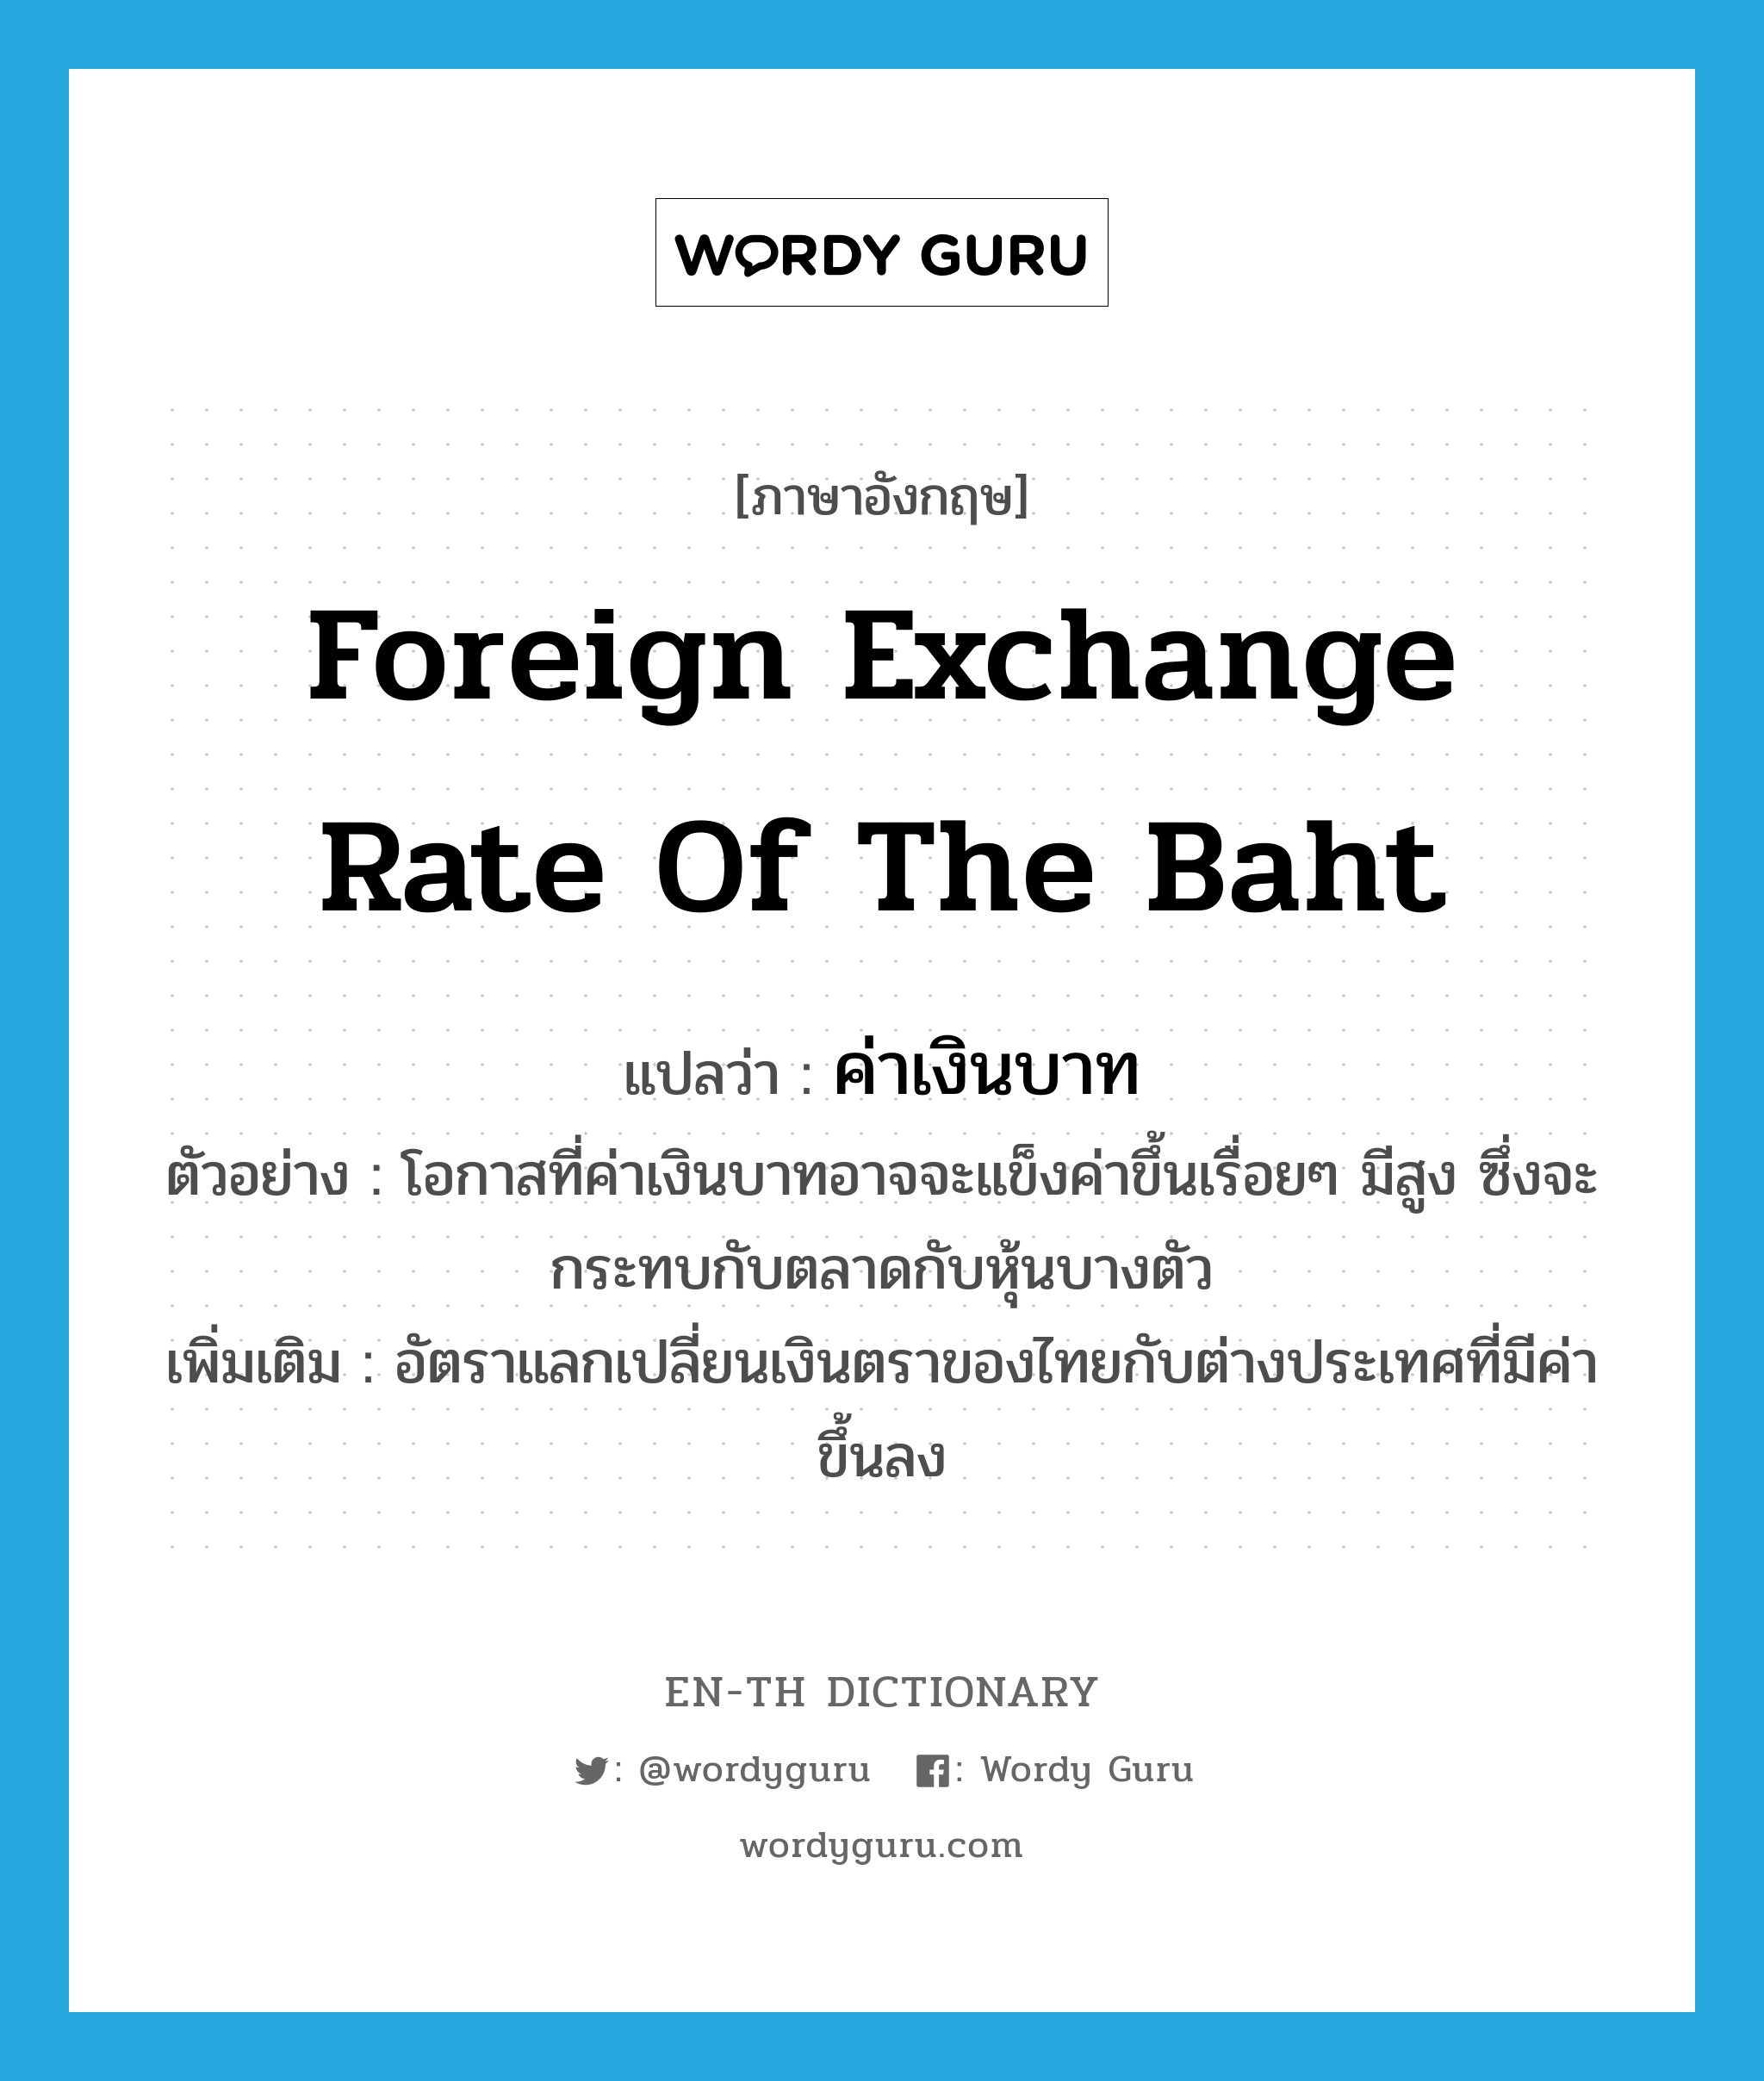 ค่าเงินบาท ภาษาอังกฤษ?, คำศัพท์ภาษาอังกฤษ ค่าเงินบาท แปลว่า foreign exchange rate of the baht ประเภท N ตัวอย่าง โอกาสที่ค่าเงินบาทอาจจะแข็งค่าขึ้นเรื่อยๆ มีสูง ซึ่งจะกระทบกับตลาดกับหุ้นบางตัว เพิ่มเติม อัตราแลกเปลี่ยนเงินตราของไทยกับต่างประเทศที่มีค่าขึ้นลง หมวด N